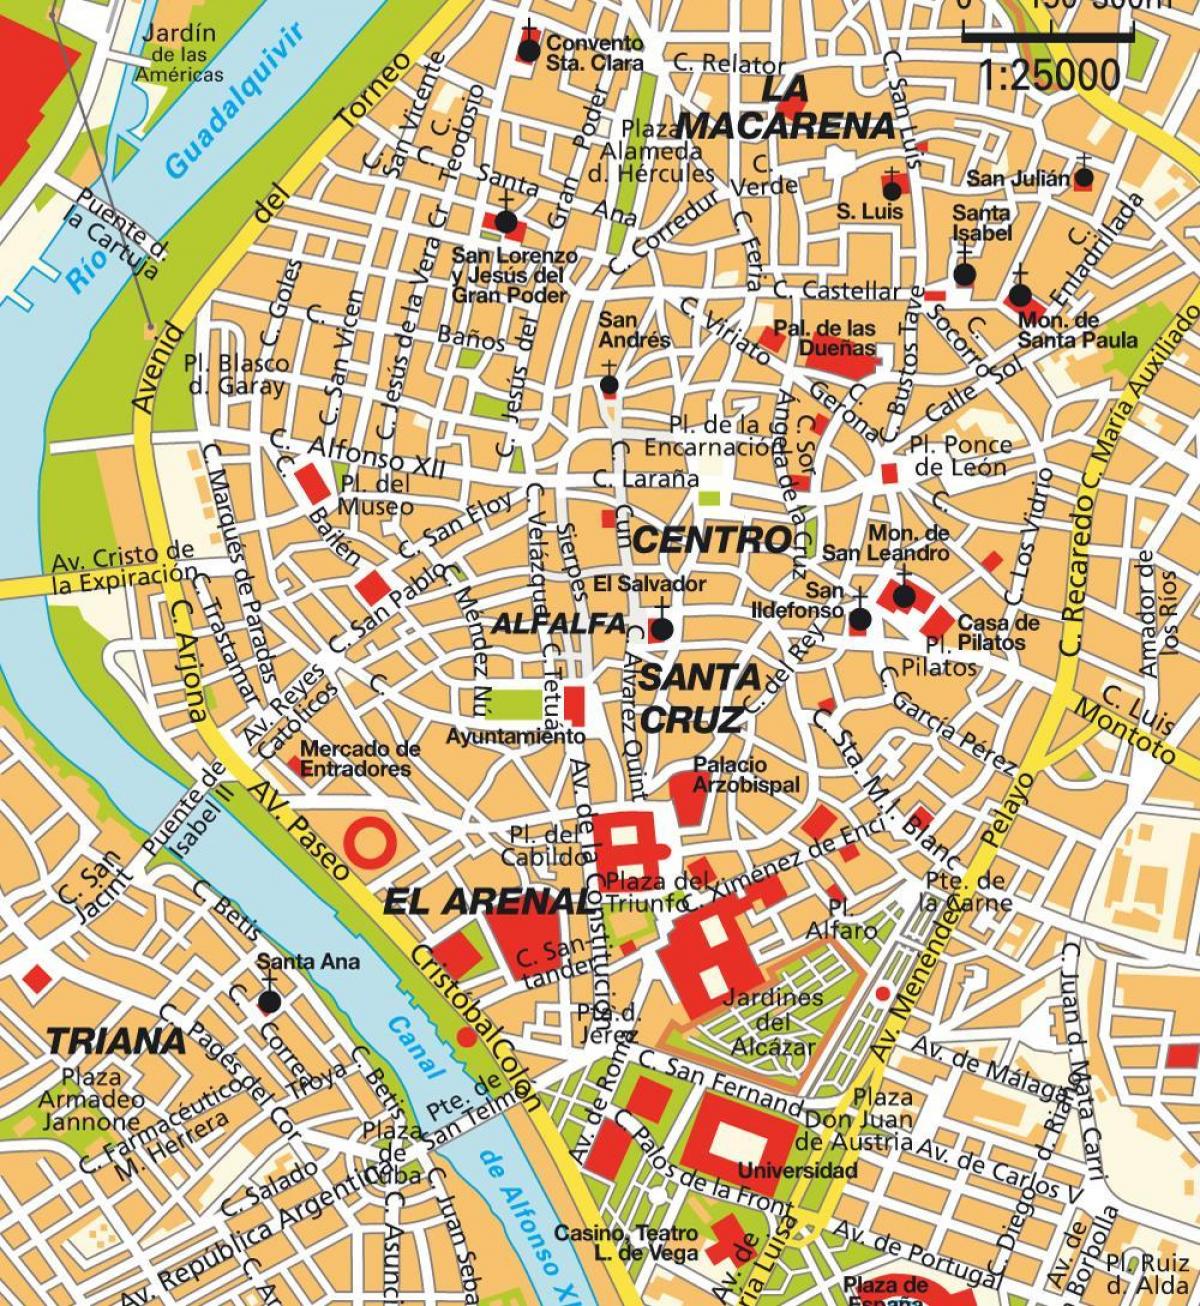 kort over Sevilla spanien centrum